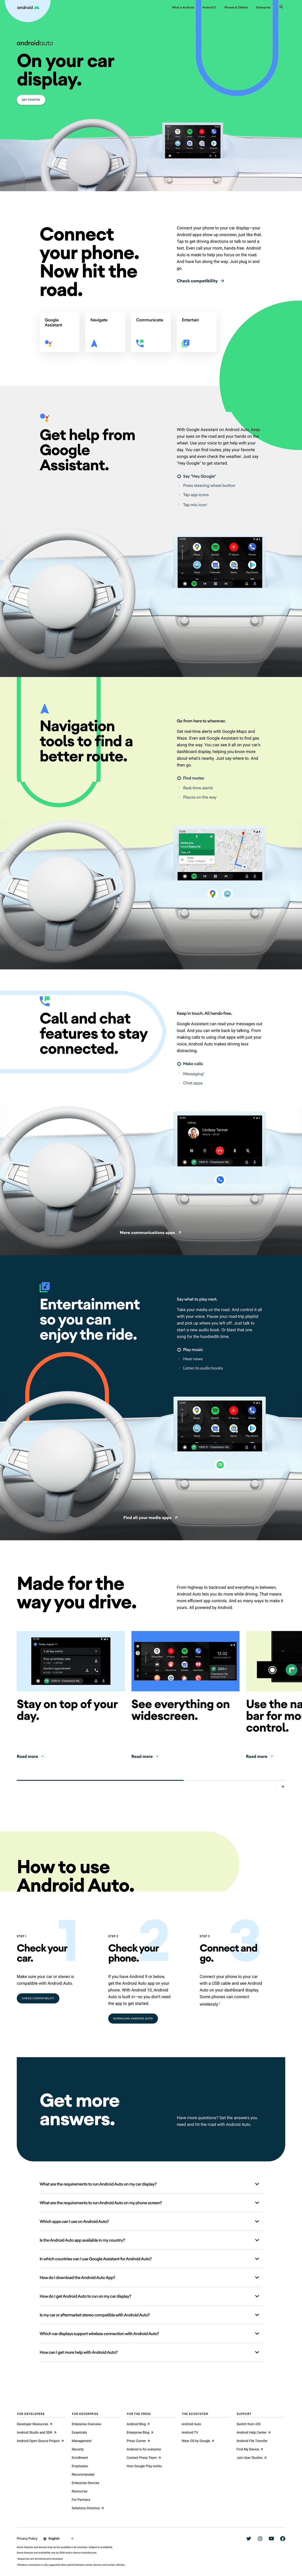 Android Auto网站设计